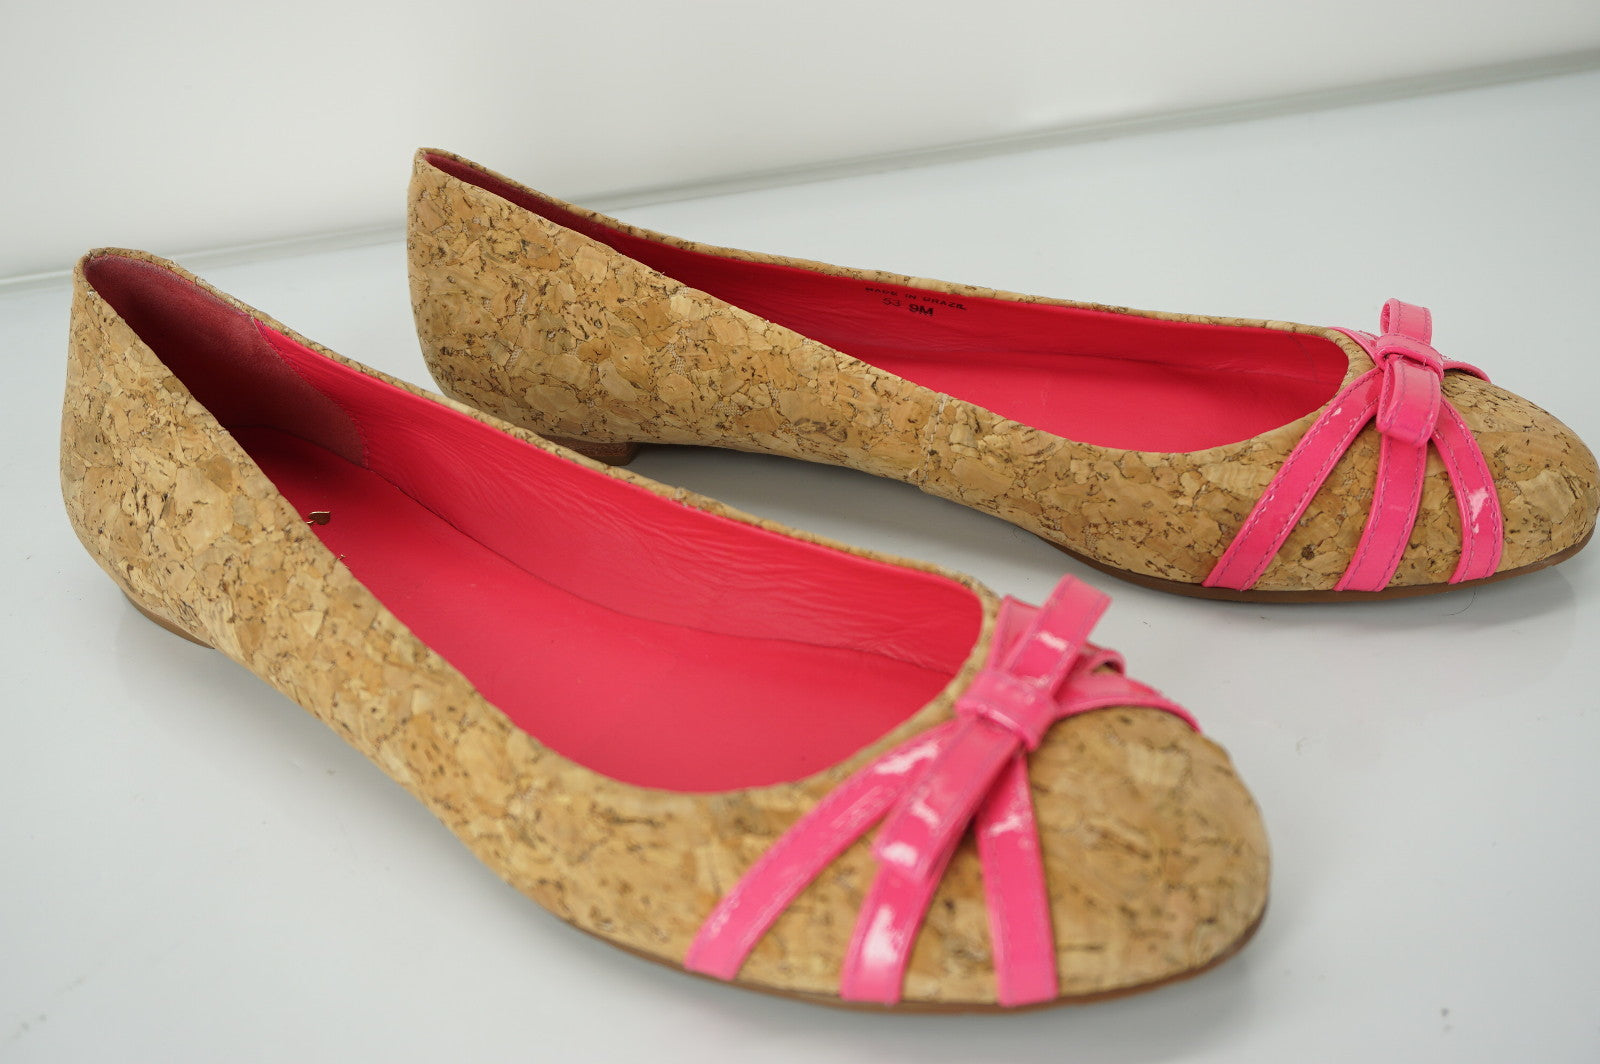 Kate Spade New York Pink Cork Tiny Bow Ballet Flats Size 9 New $198 Women's Sz